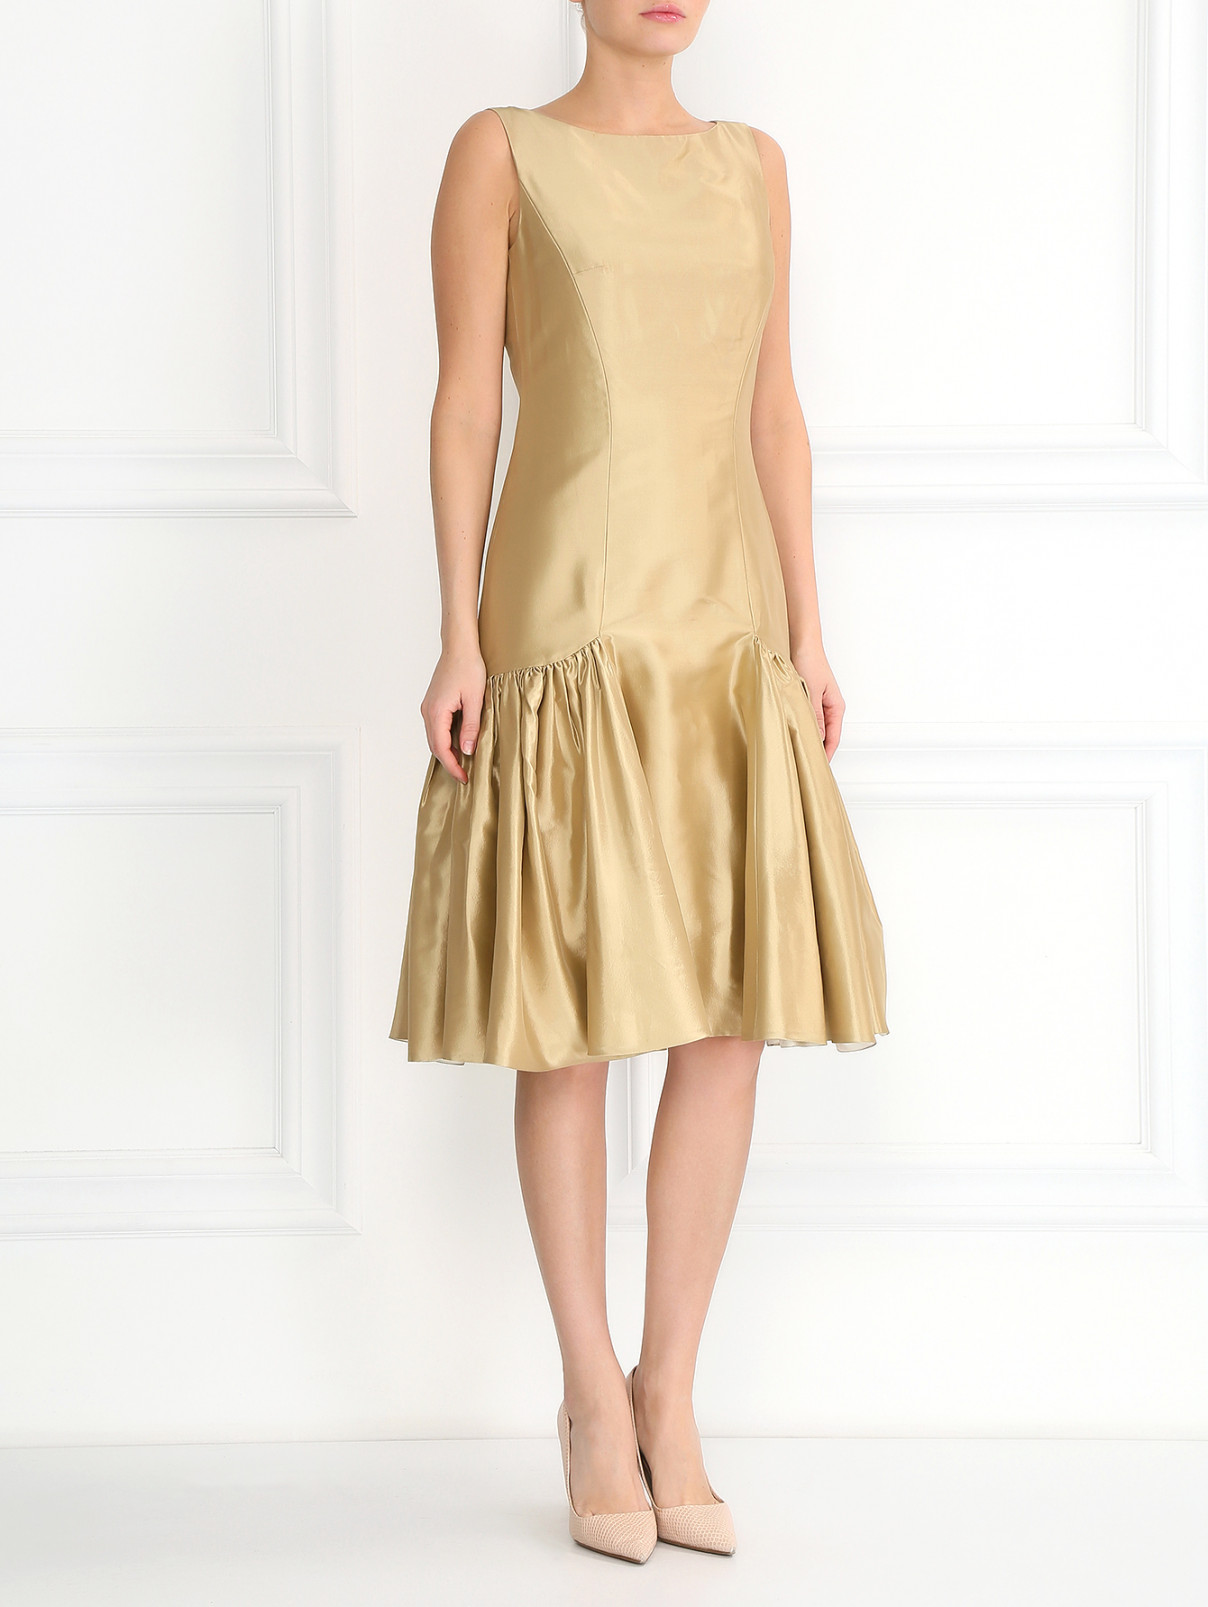 Платье-миди из шелка с объемной юбкой A La Russe  –  Модель Общий вид  – Цвет:  Золотой